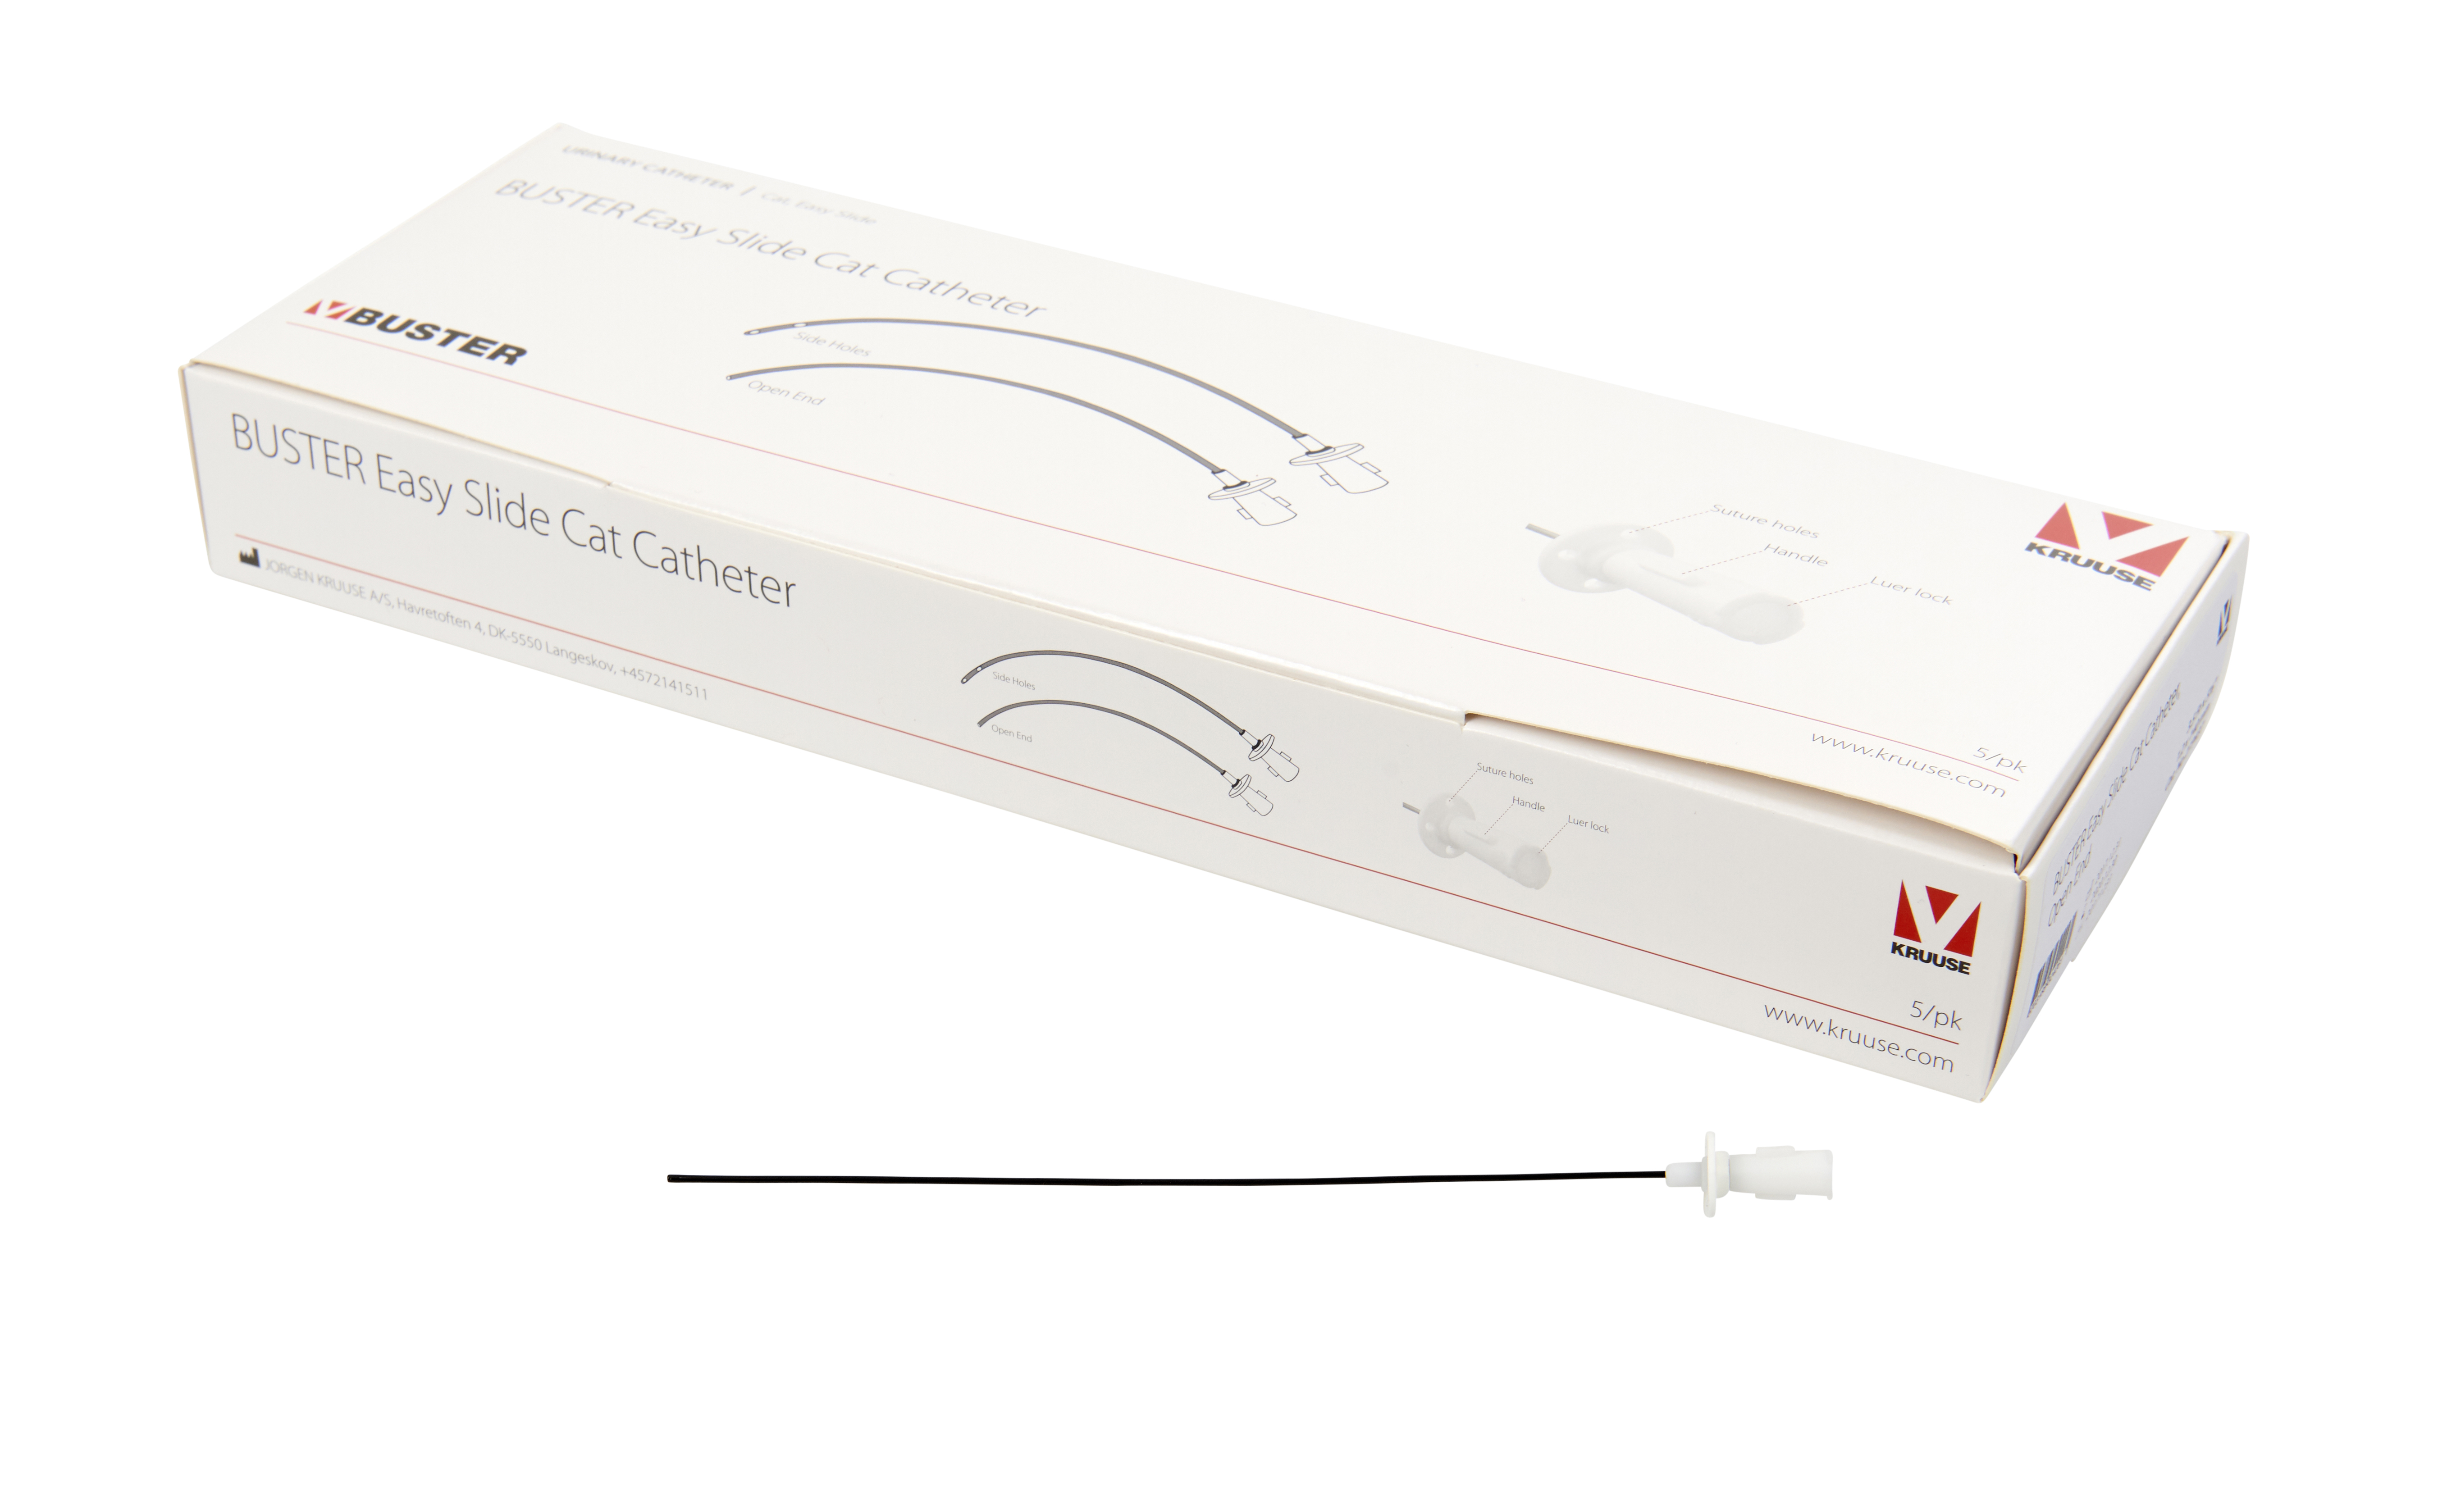 BUSTER Easy Slide Cat Catheter, 1.2 x 140 mm/3.5 Fr x 5½